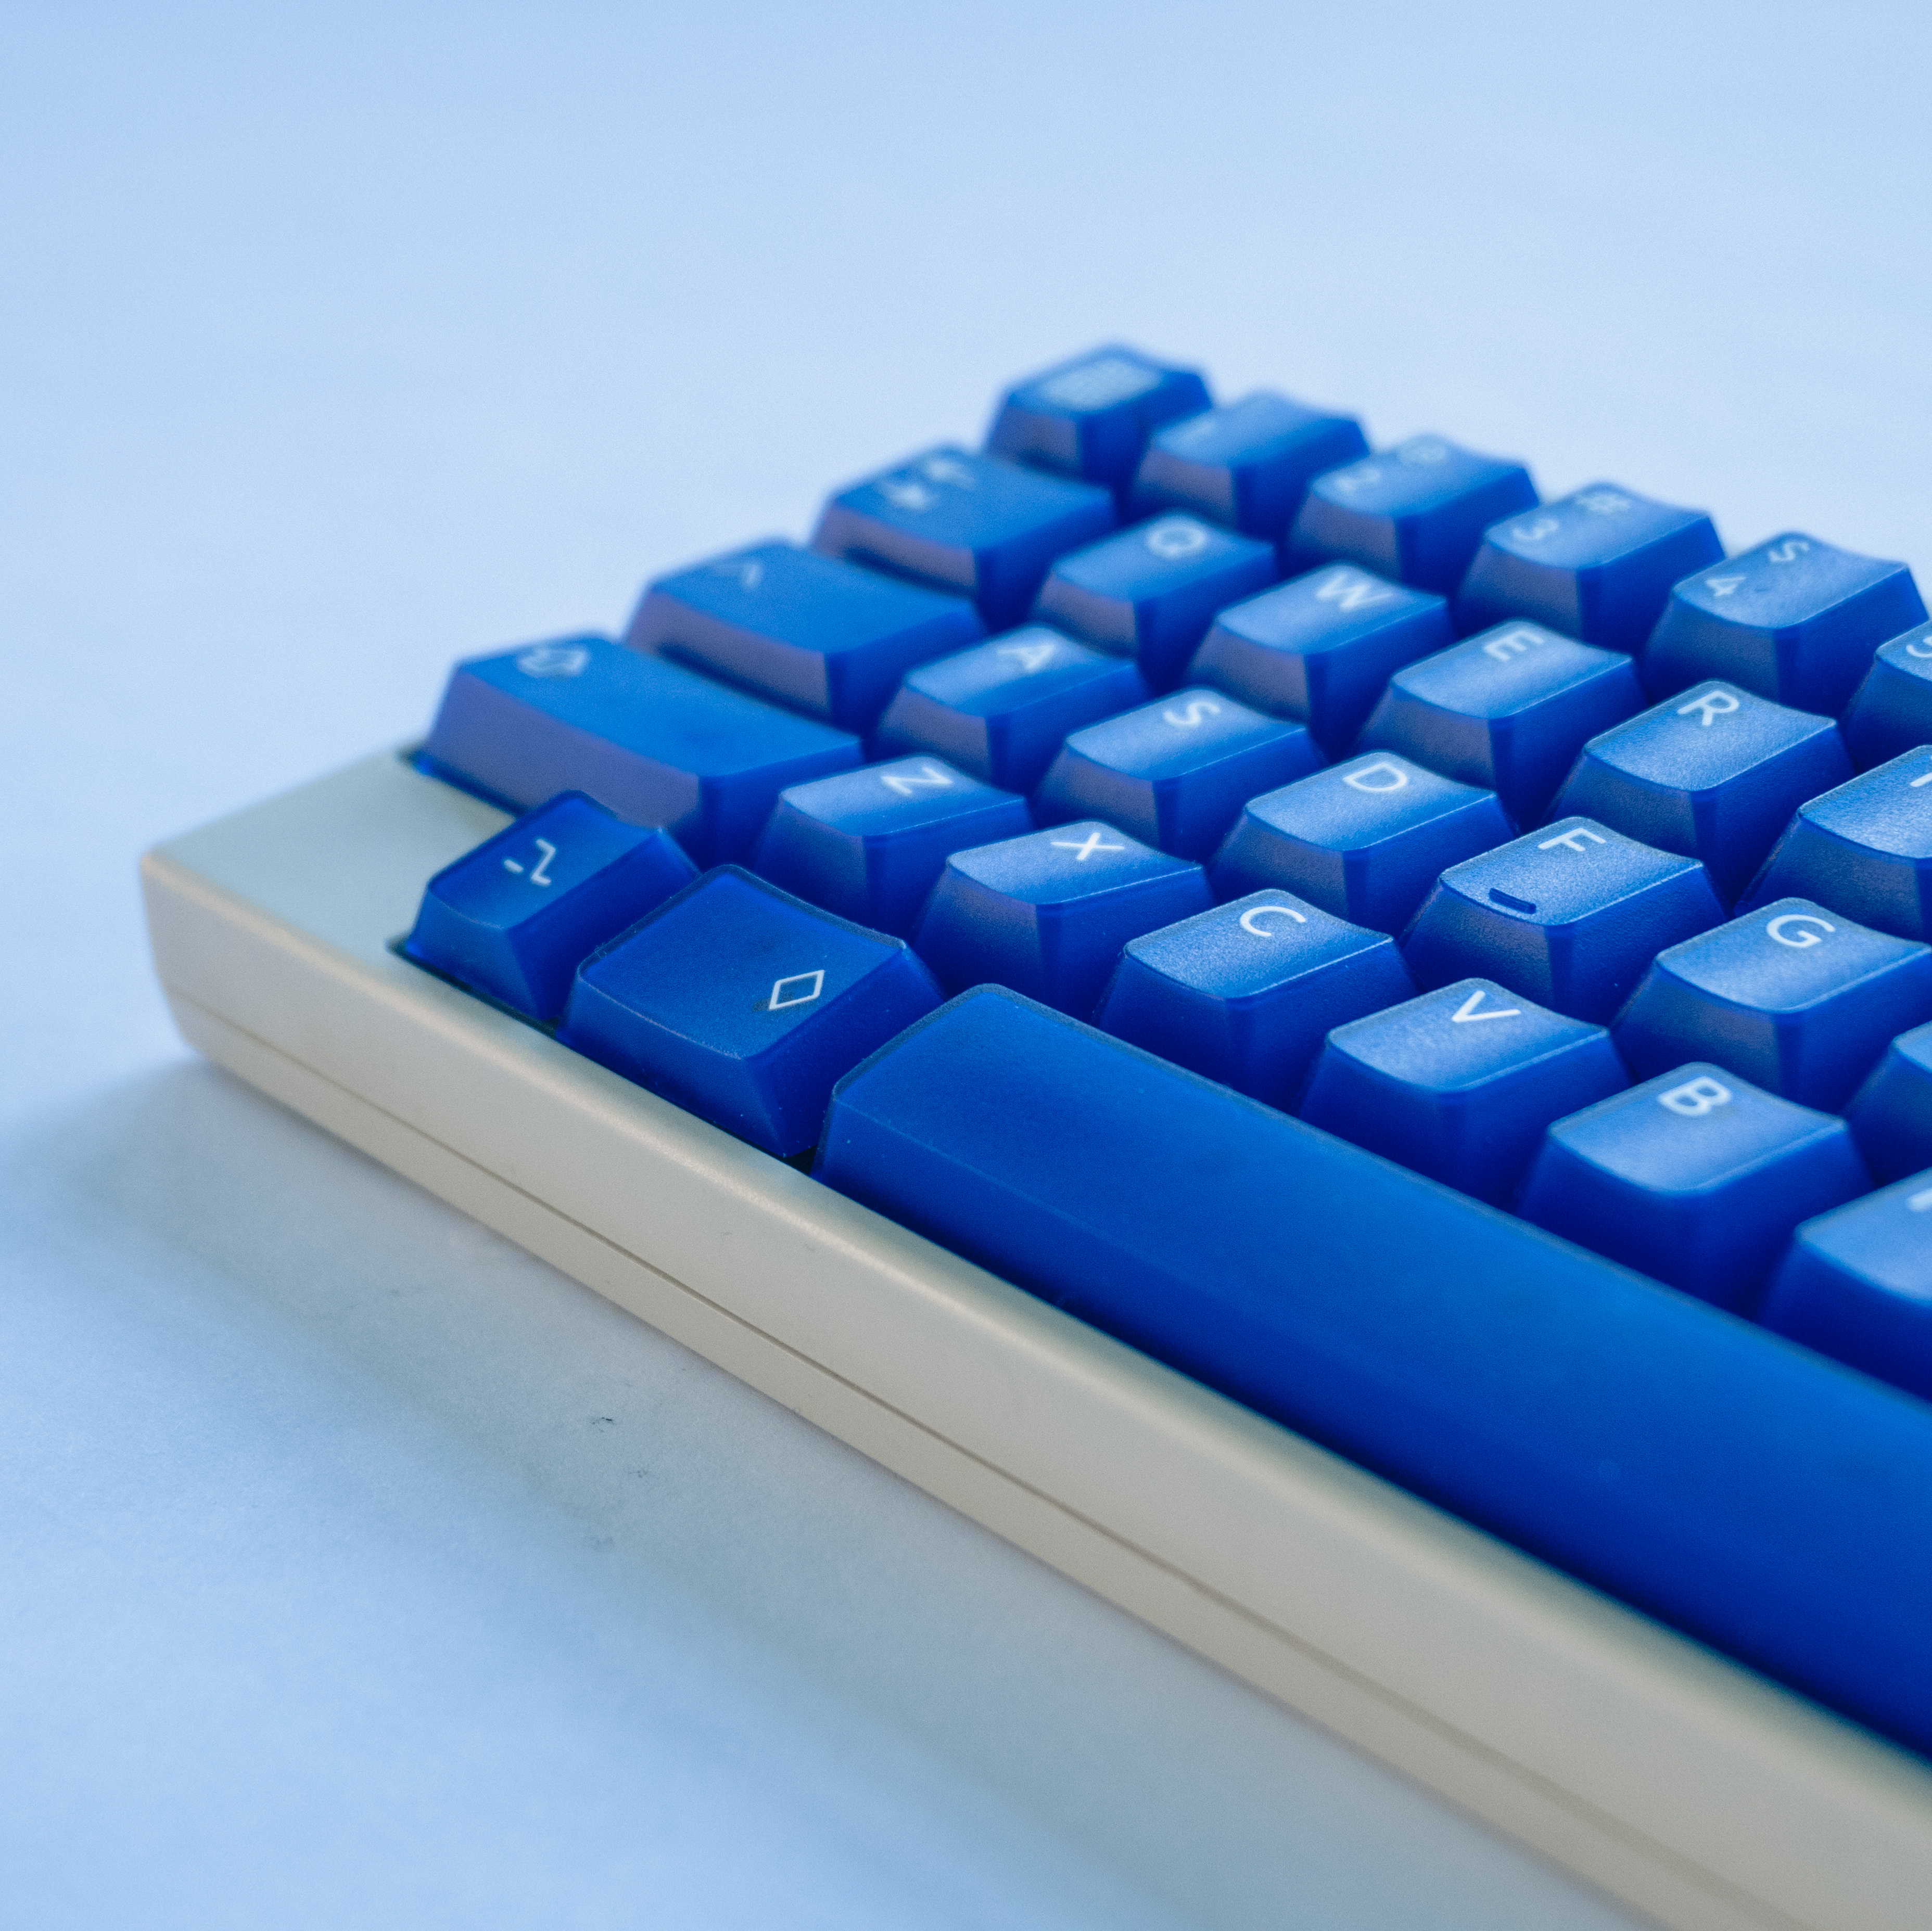 Snow & Klein Keyboards - HHKB Professional Hybrid 雪- HHKB 